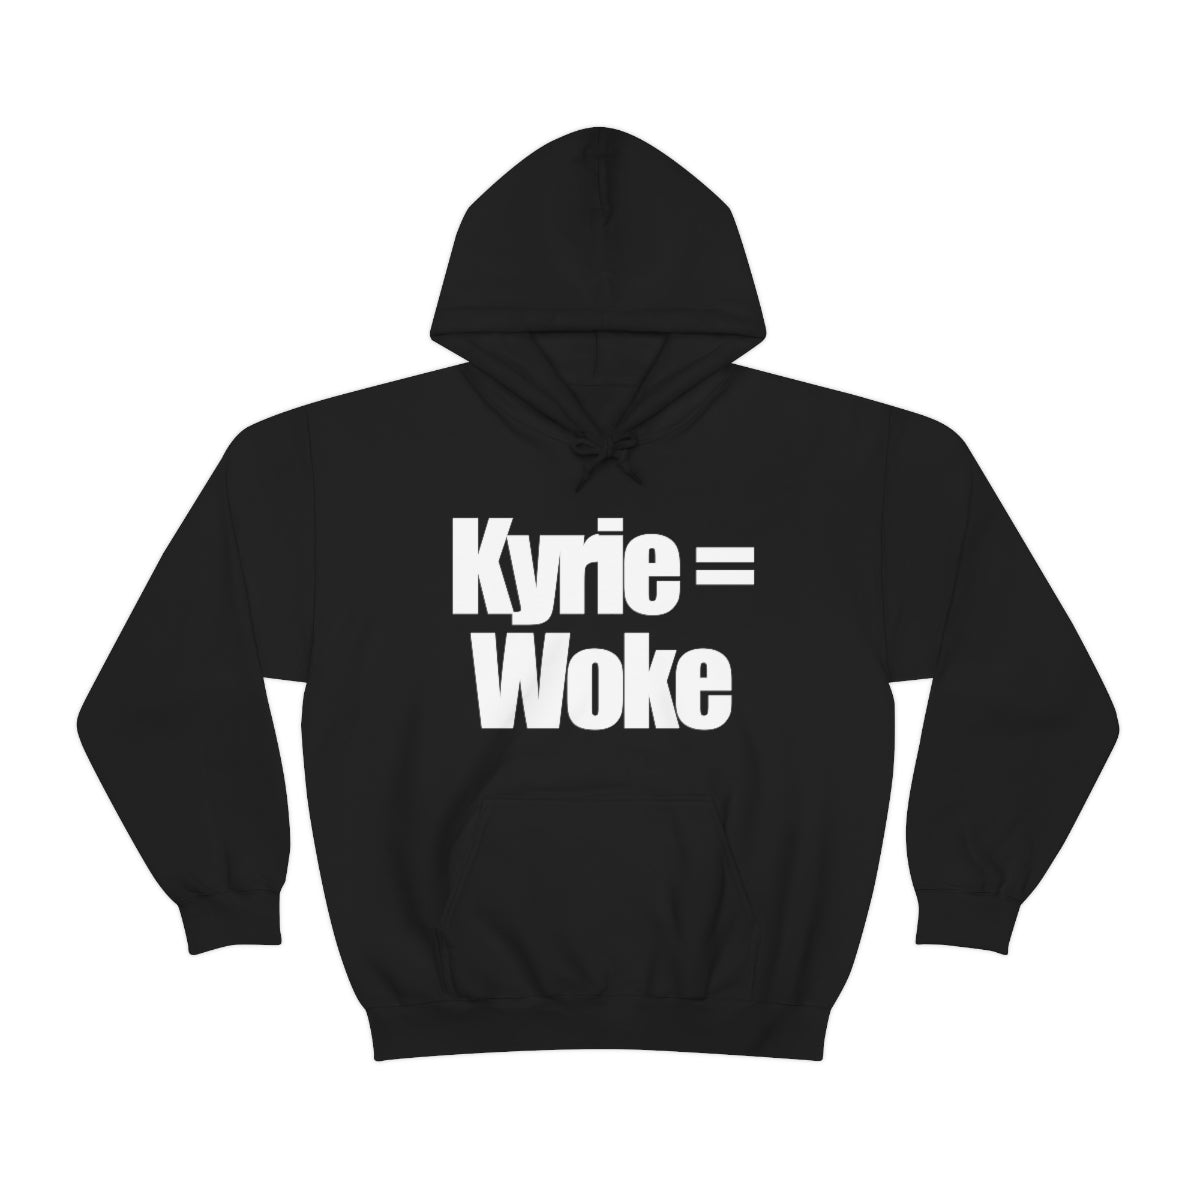 "Kyrie = Woke" Hoodie (Available in Multiple Colors)